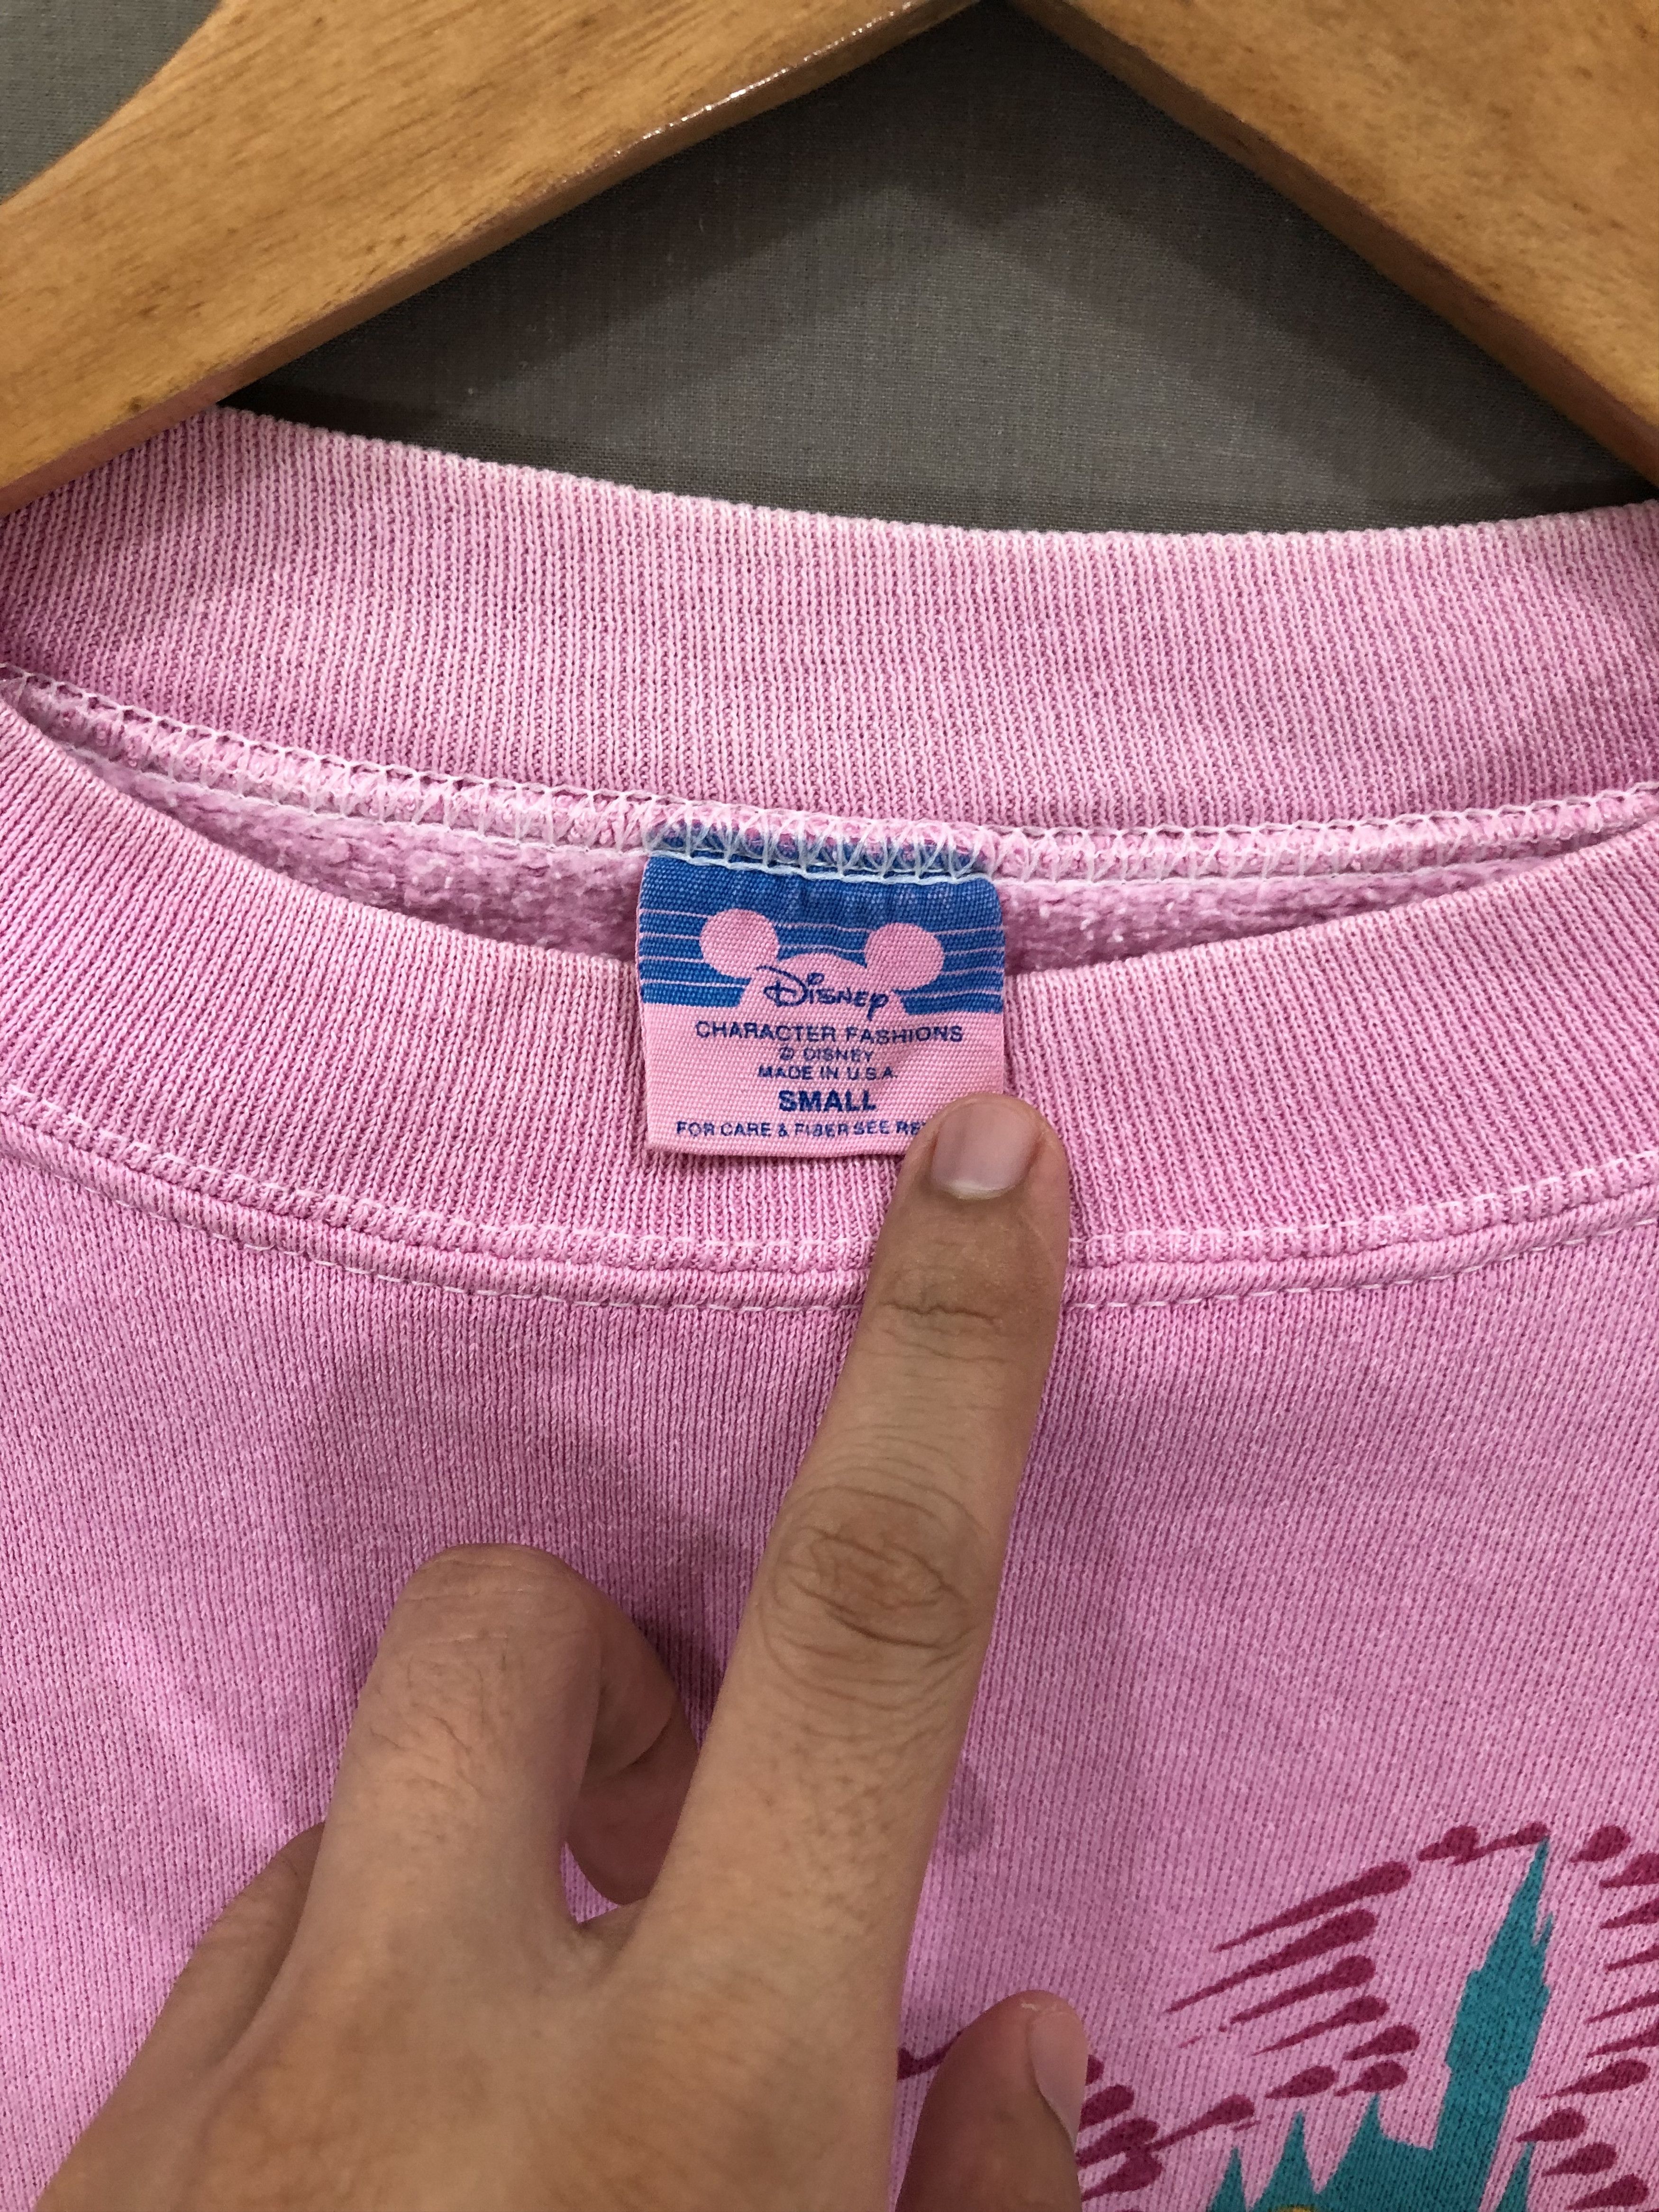 Mickey Mouse Vintage Pink Mickey Mouse Sweatshirt XS #5600-1-212-IRA Size US XS / EU 42 / 0 - 3 Thumbnail